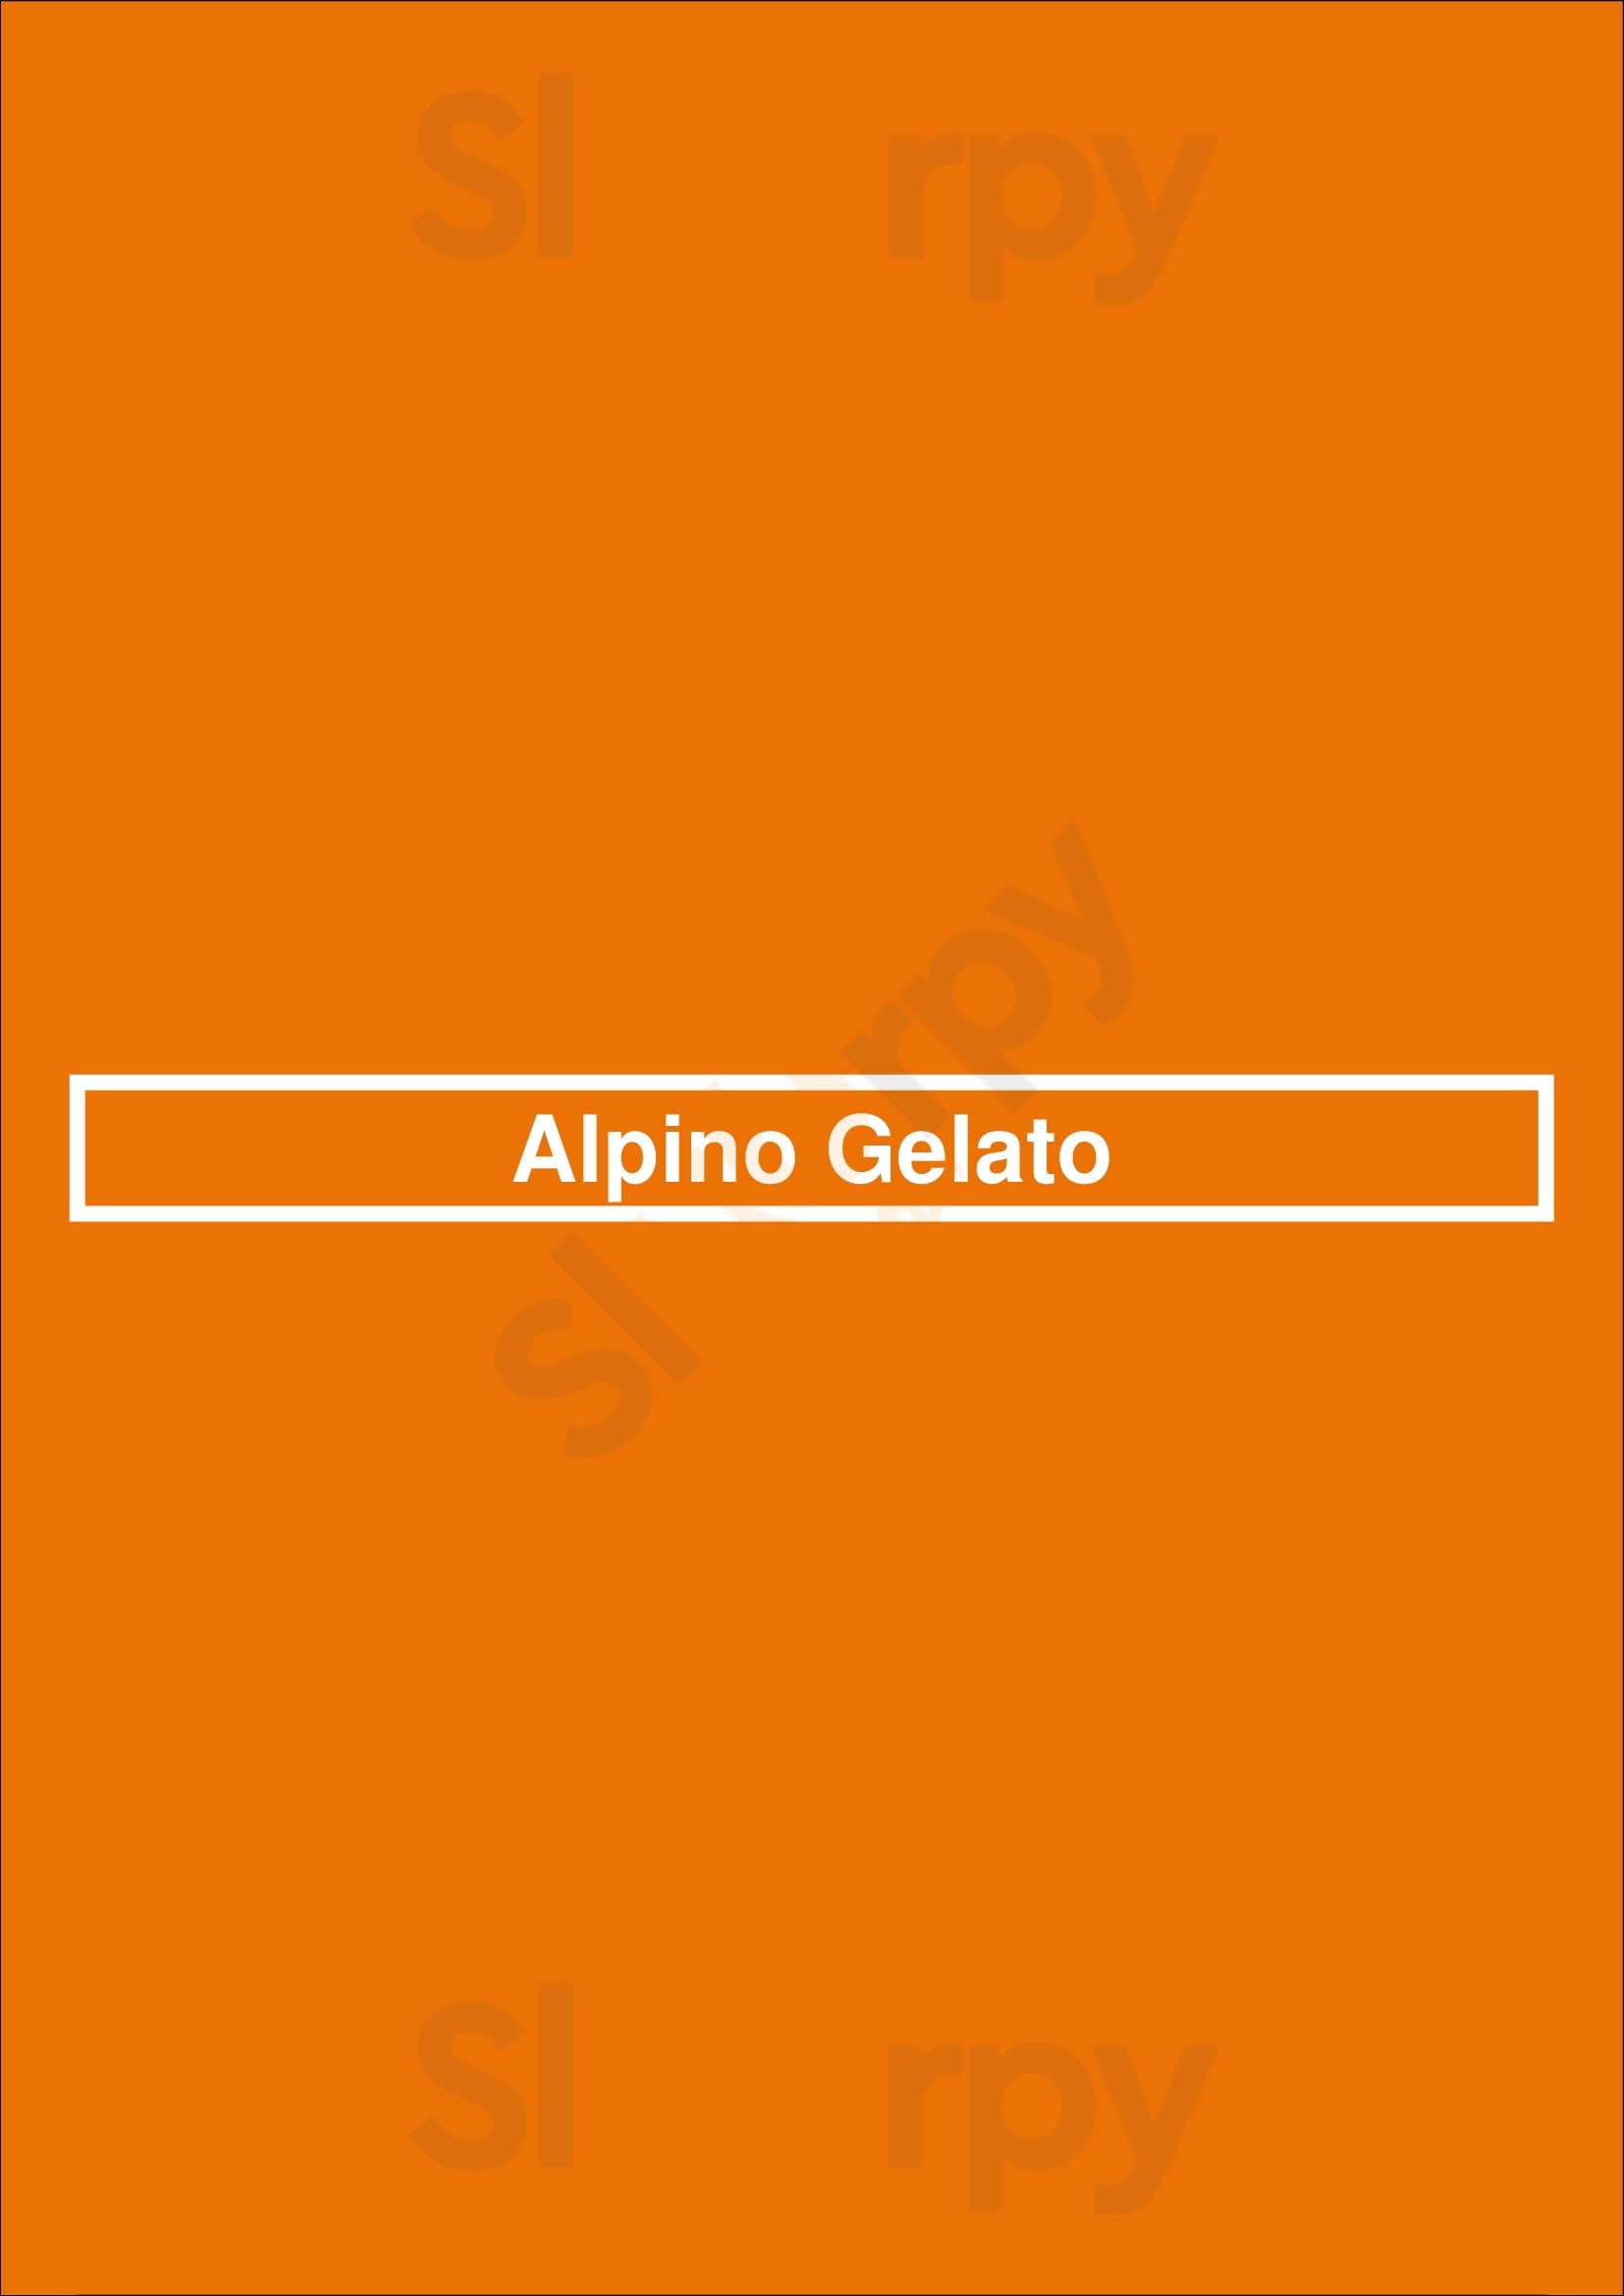 Alpino Gelato Normanton Menu - 1